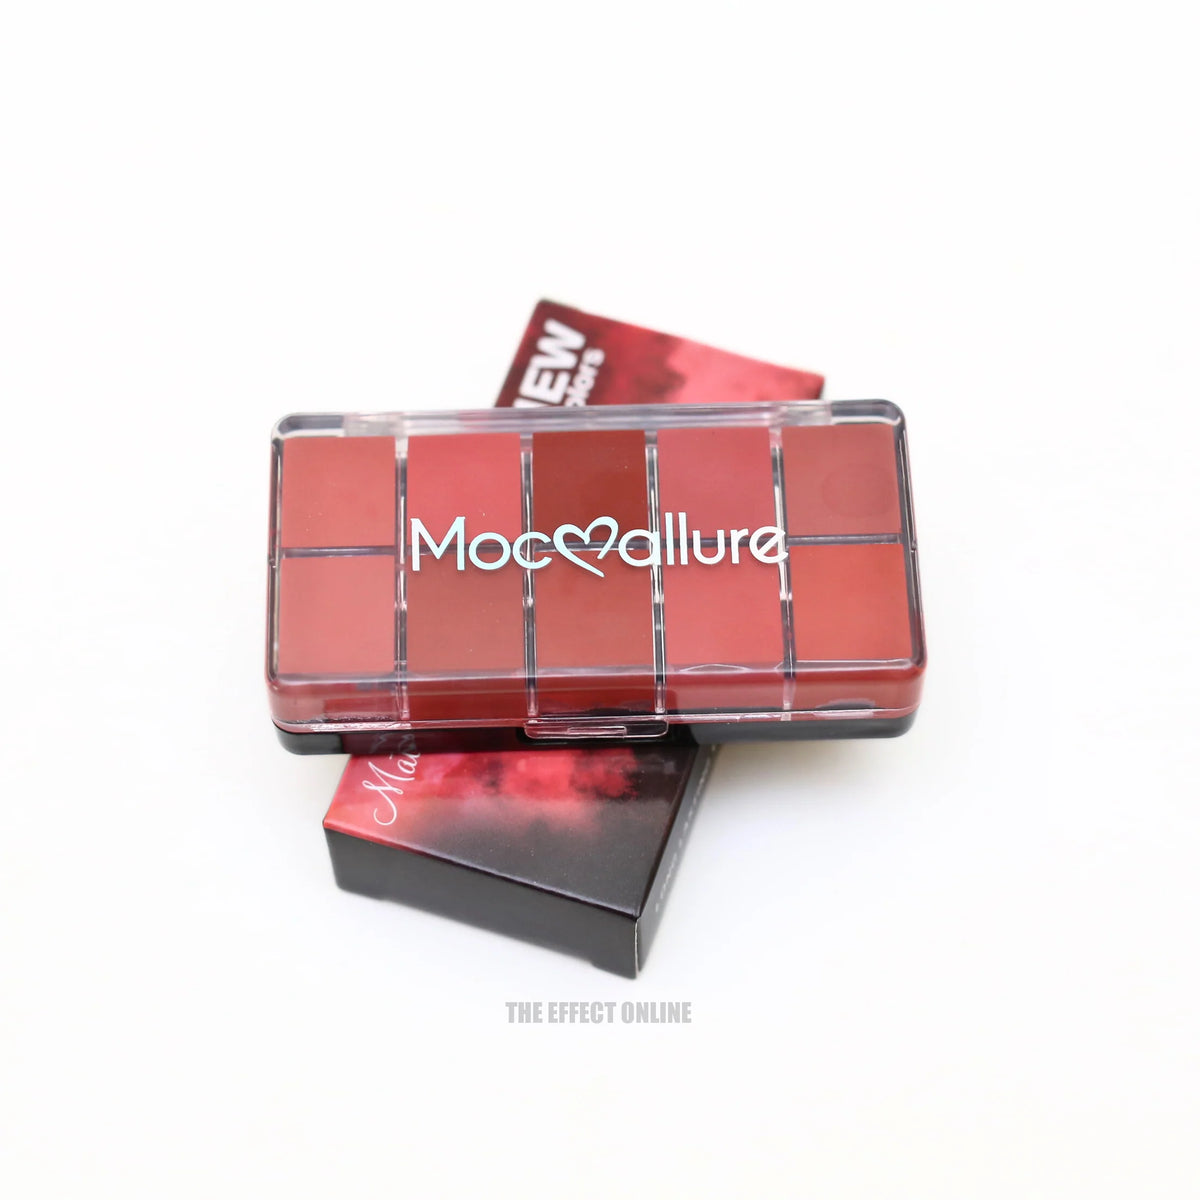 10 Color Mocallure Matte Cream Lipstick Palette